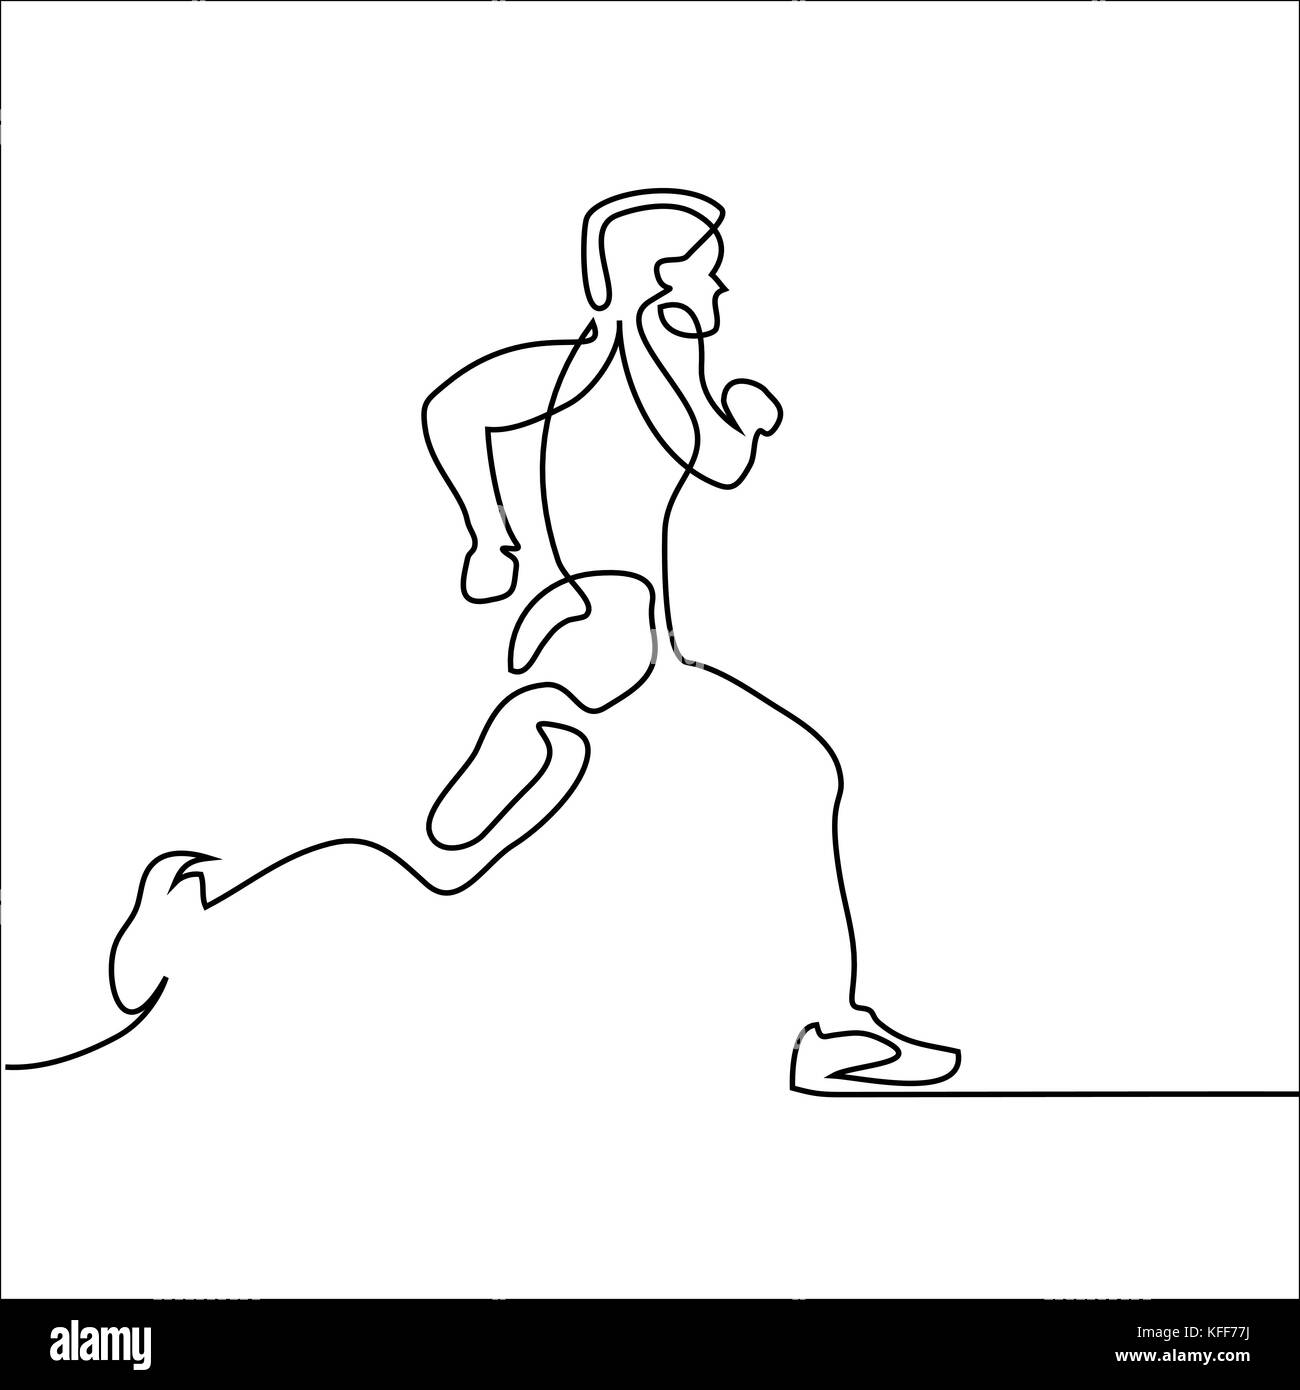 Durchgehende Linie zeichnen. Sport laufender Mann auf weißem Hintergrund. Vector Illustration. Stock Vektor